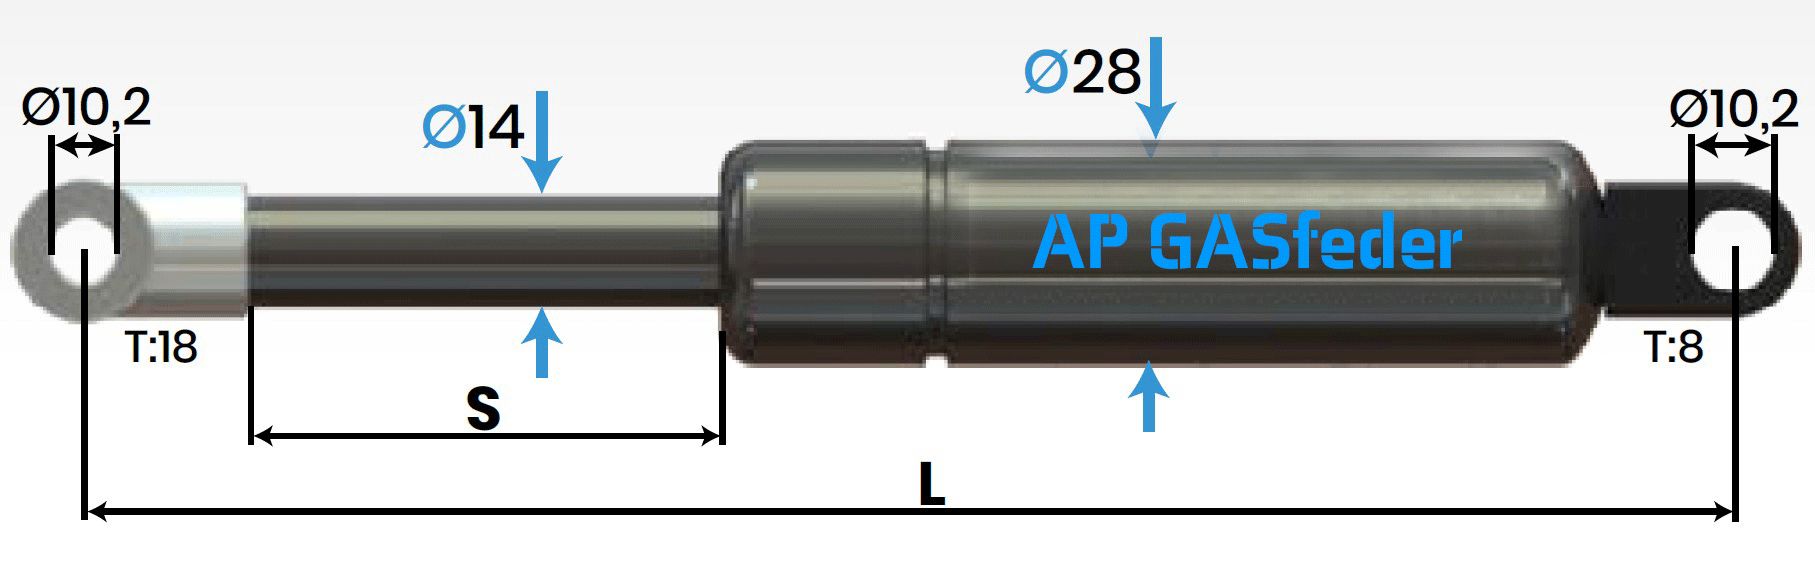 Immagine di AP GASfeder 1300N, 14/28, Hub(S): 150 mm, Länge (L): 402 mm,  Alternatvie SRST.1851LT